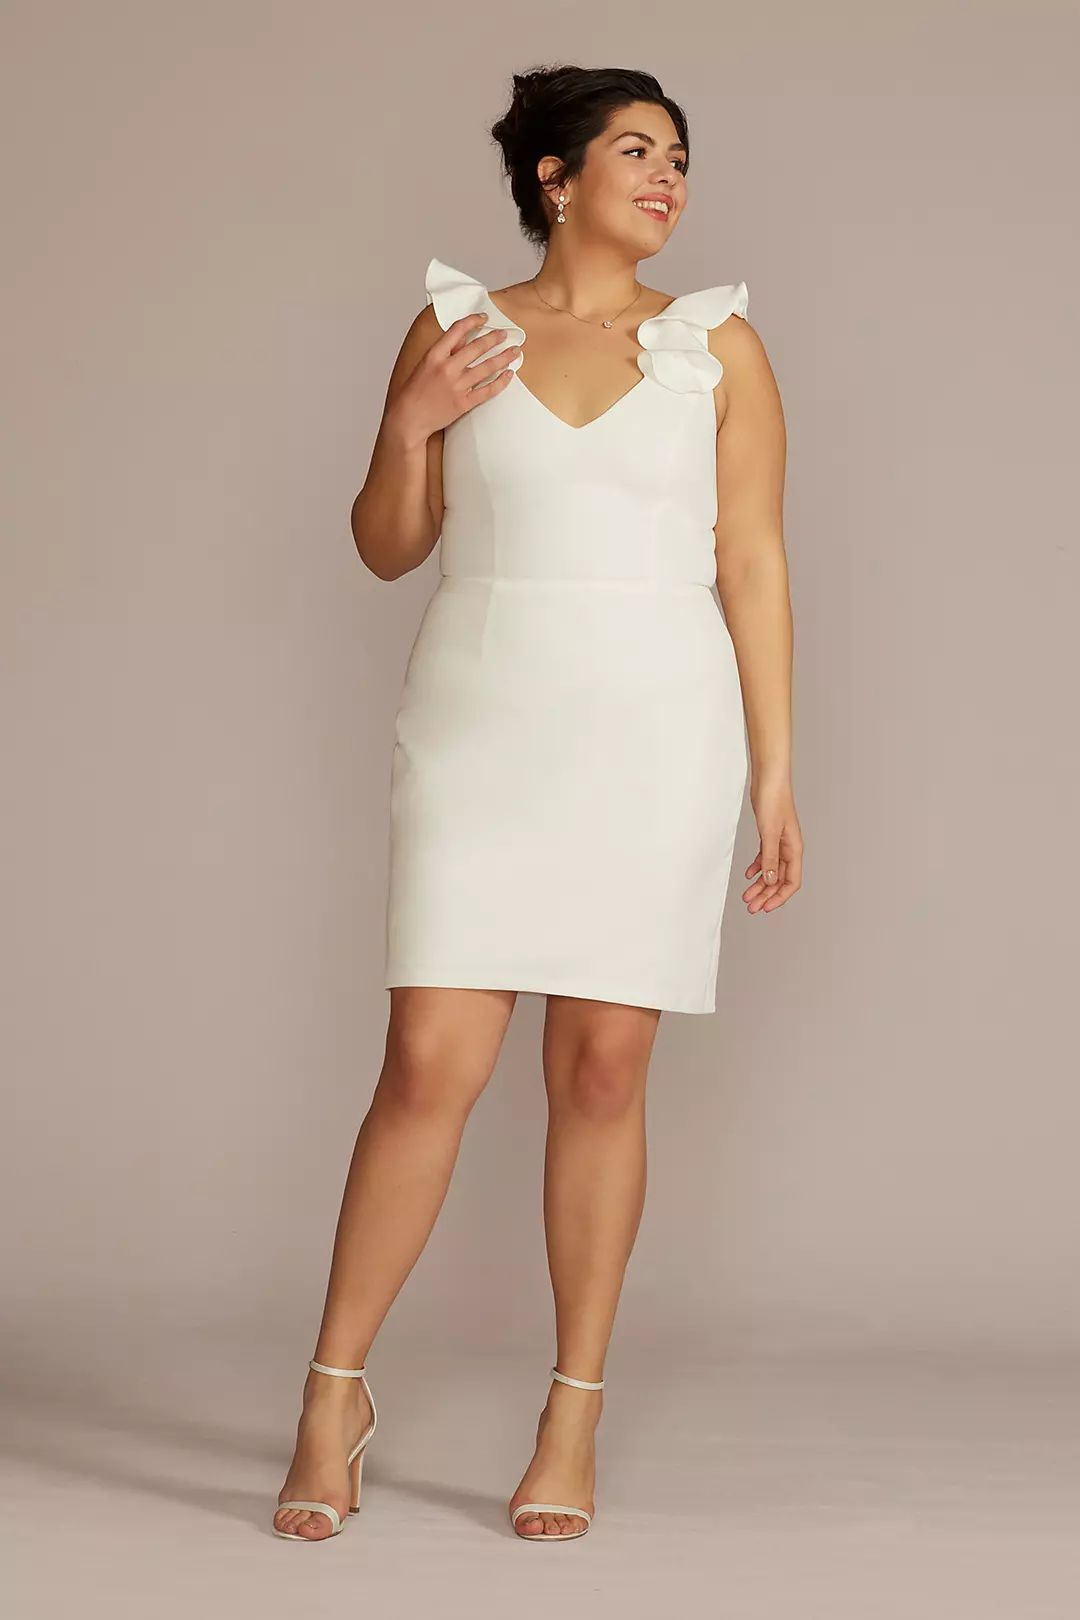 V-Neck Ruffle Short Dress with Open Back Image